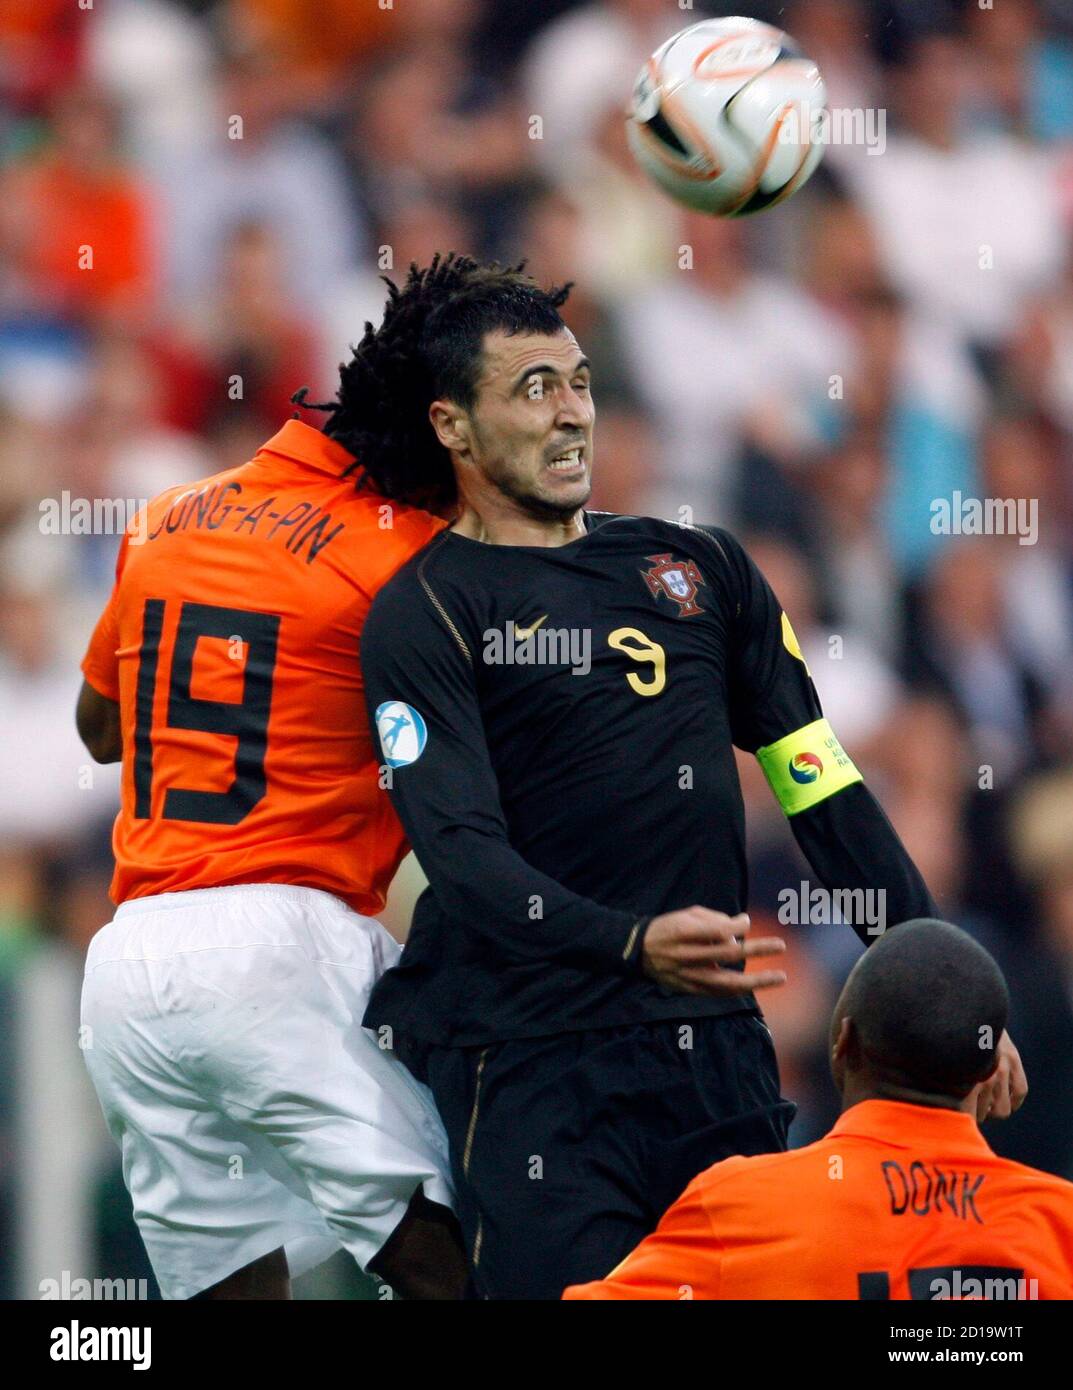 Calvin Jong-a-pin dei Paesi Bassi (L) e Ryan Donk (R) sfidano Hugo Almeida  del Portogallo durante la loro partita di calcio del Gruppo A al torneo  europeo Under-21 di Groningen il 13,2007